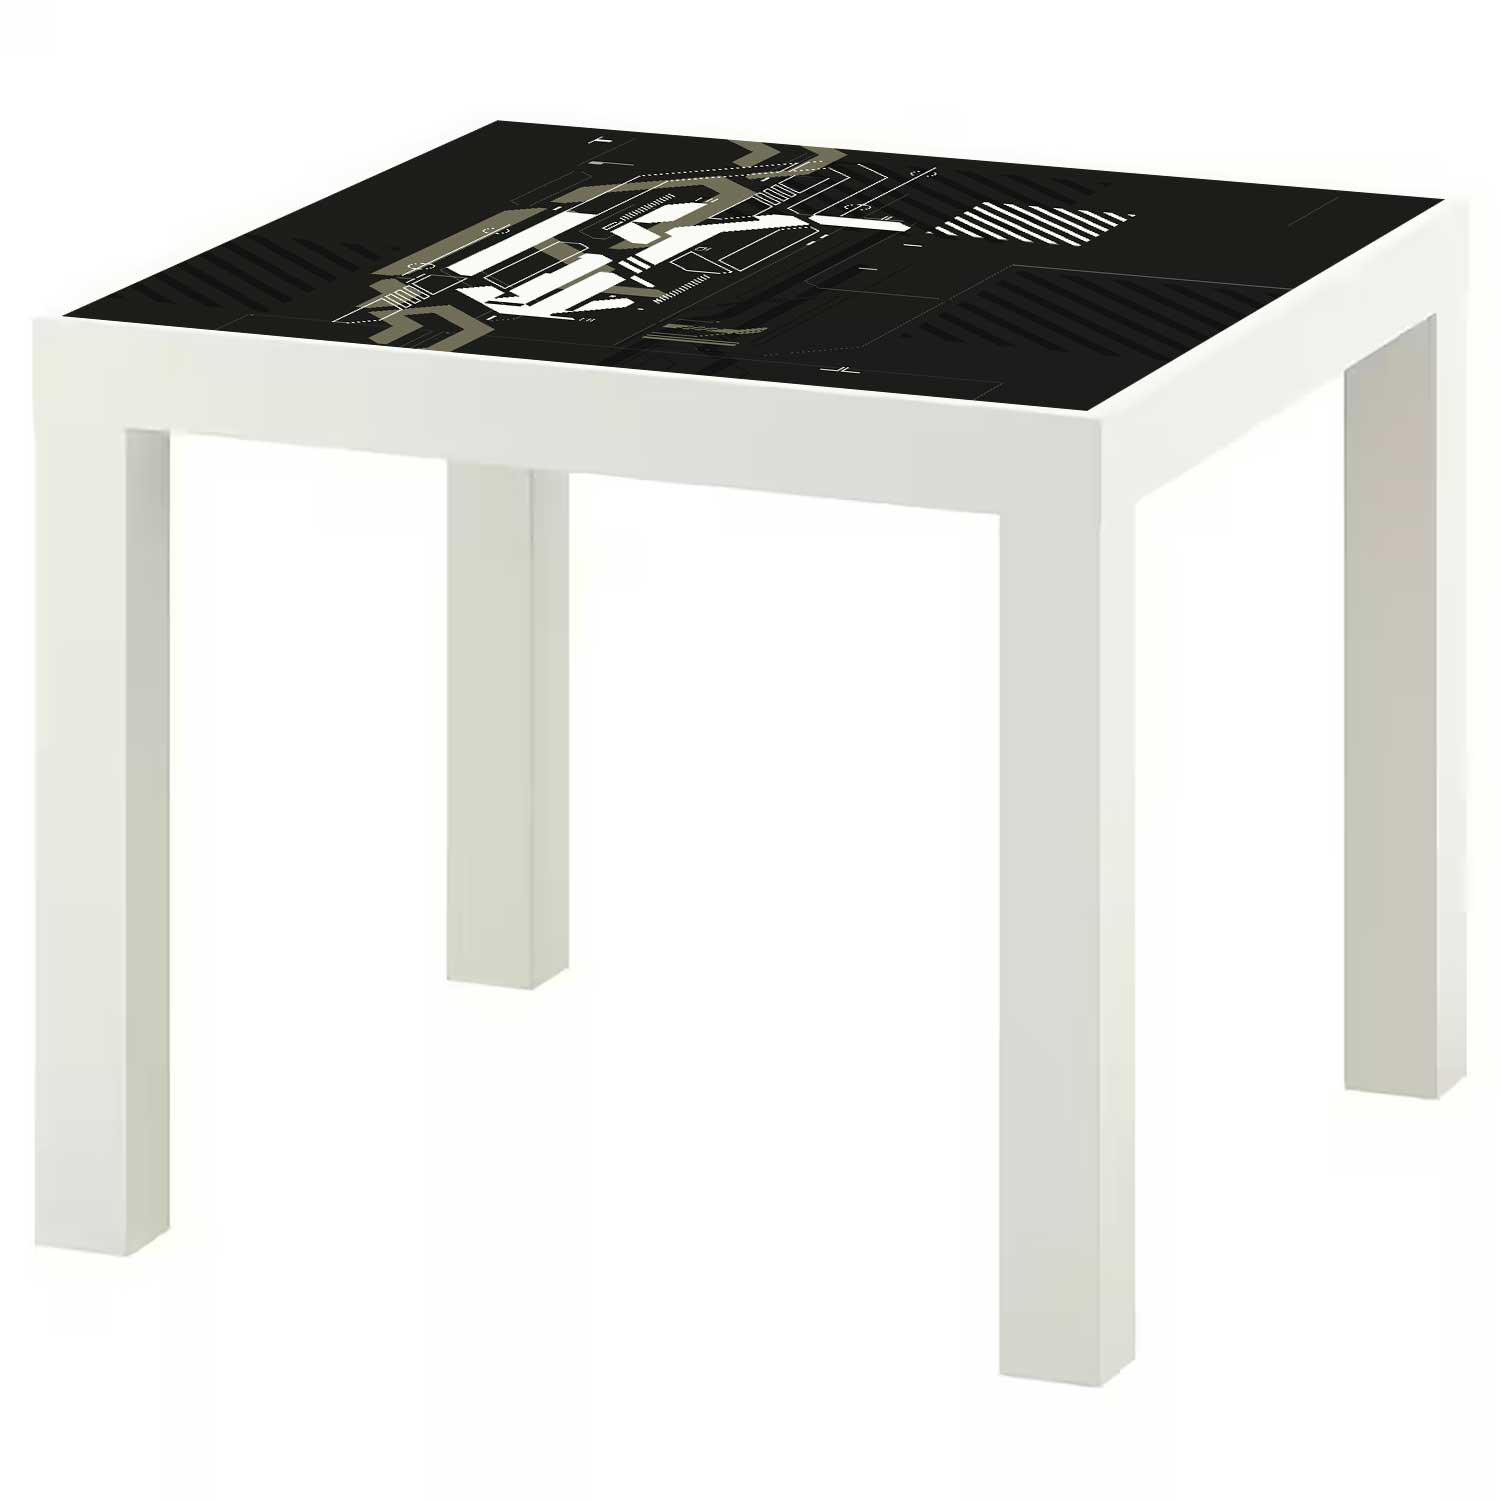 Möbelfolie für IKEA Lack Tisch 55x55 cm 'Warzone'